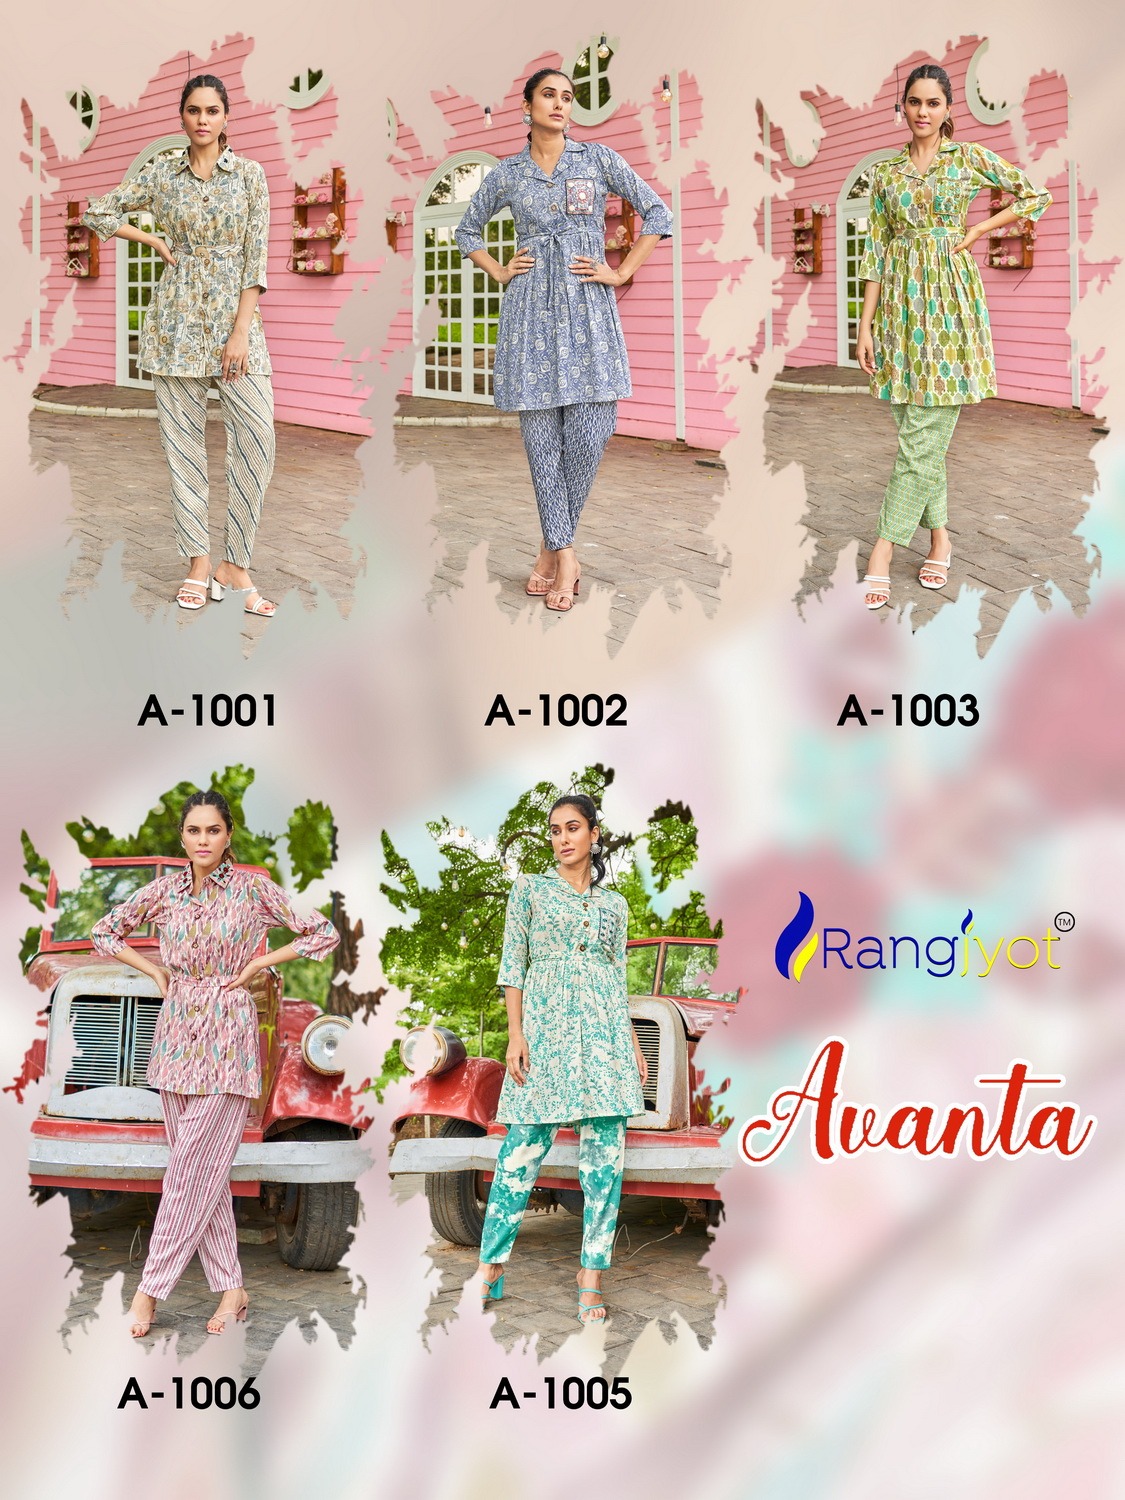 Rangjyot Avanta Vol 1 collection 6